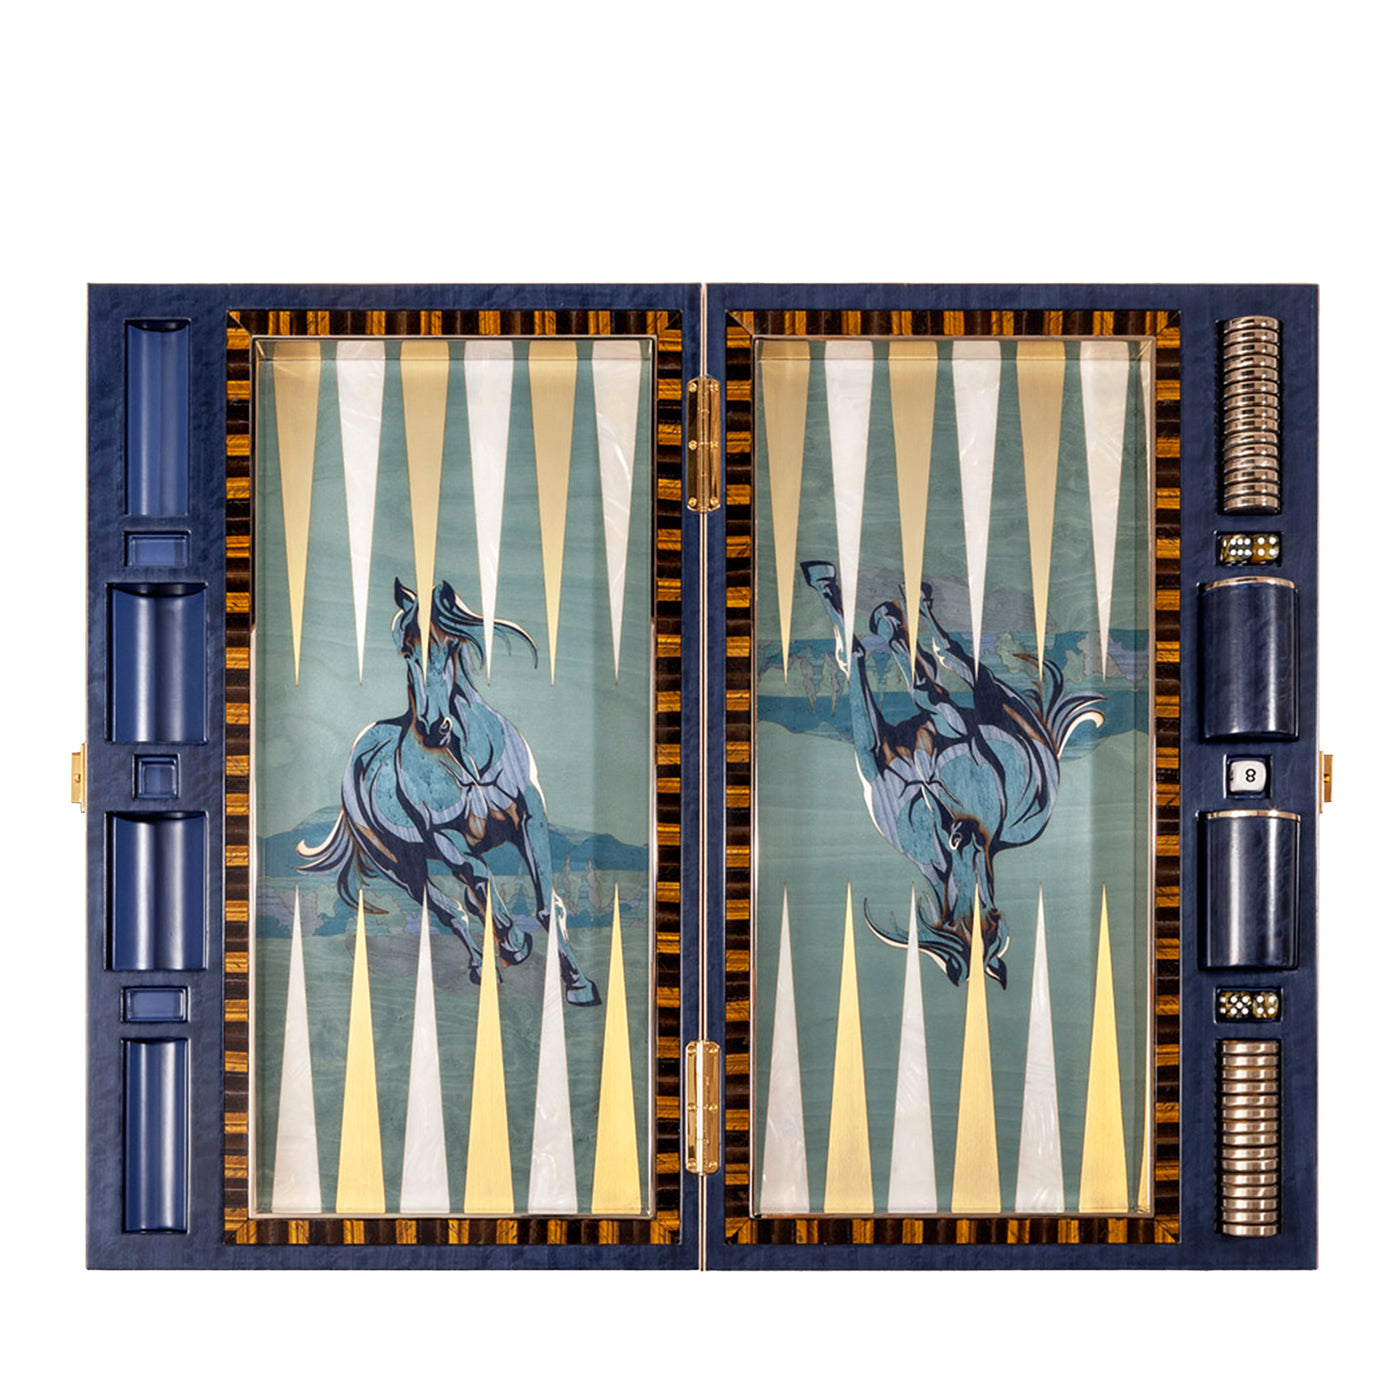 Jeu de backgammon artistique en marqueterie polychrome par Fabio Calagna - Vue principale